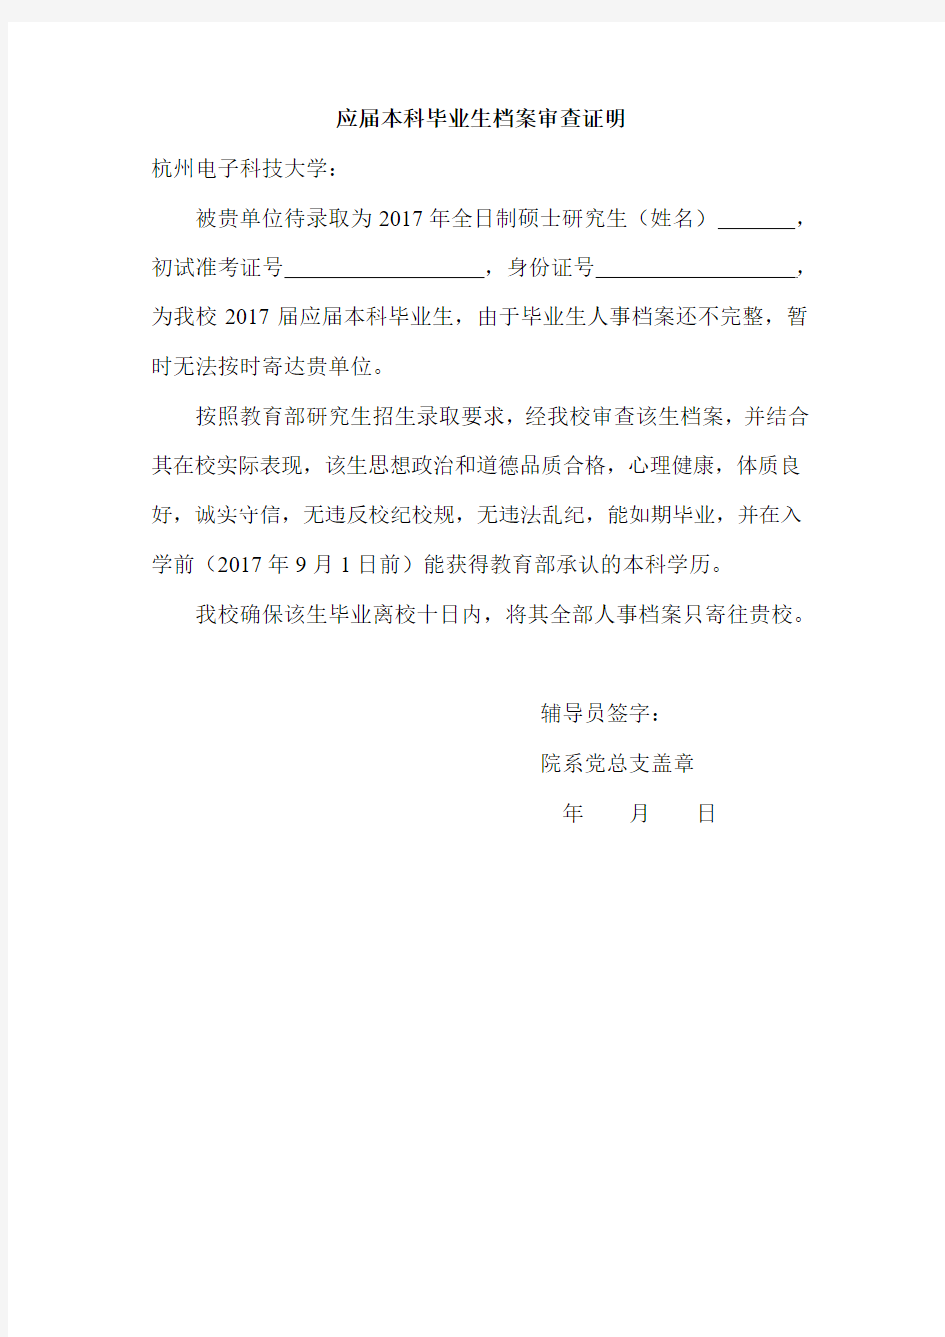 杭州电子科技大学应届本科毕业生档案审查证明